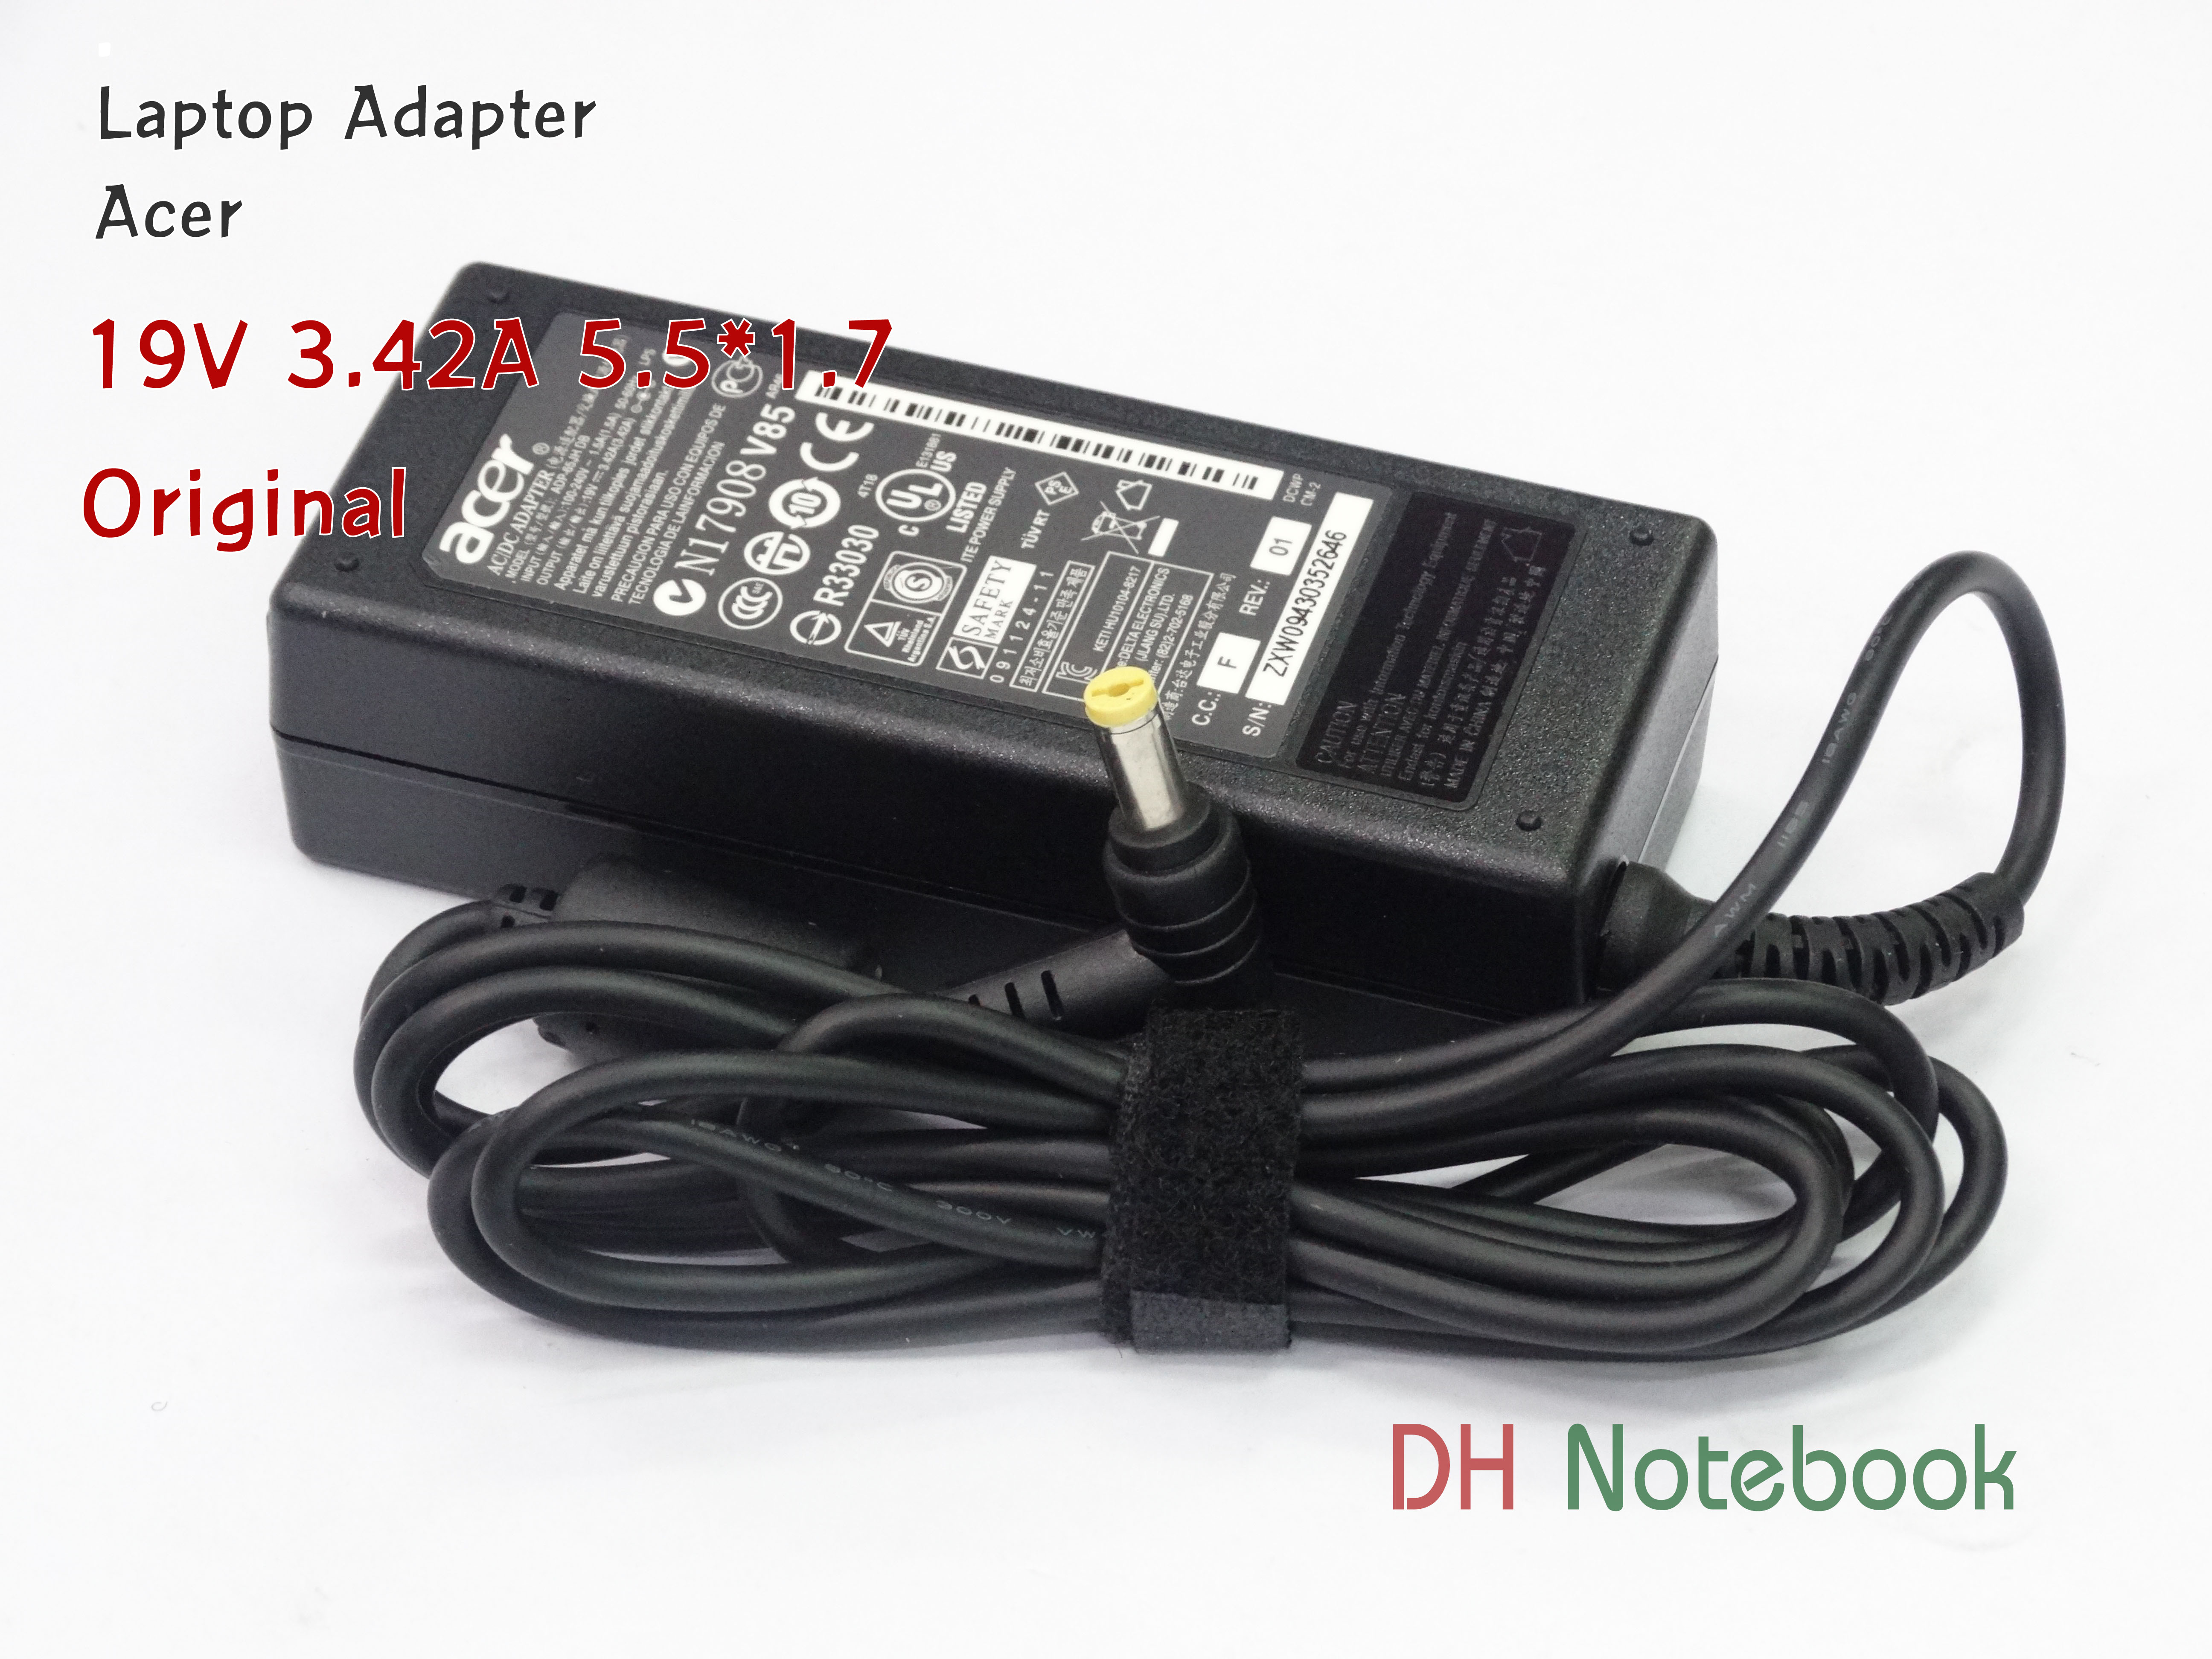 Adapter ACER 19V 3.42A 5.5*1.7 ของแท้